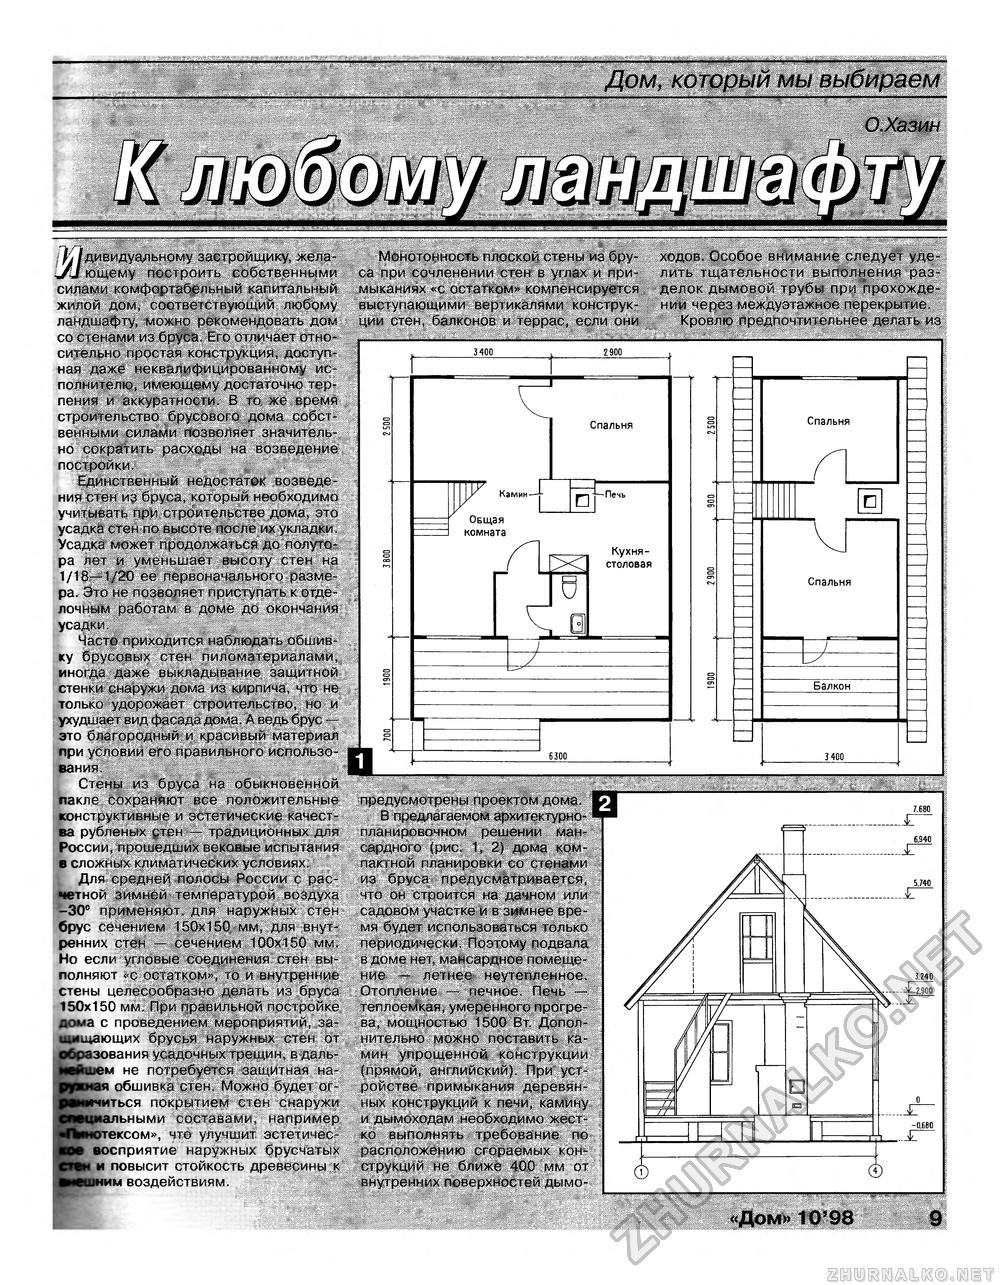 Дом 1998-10, страница 9